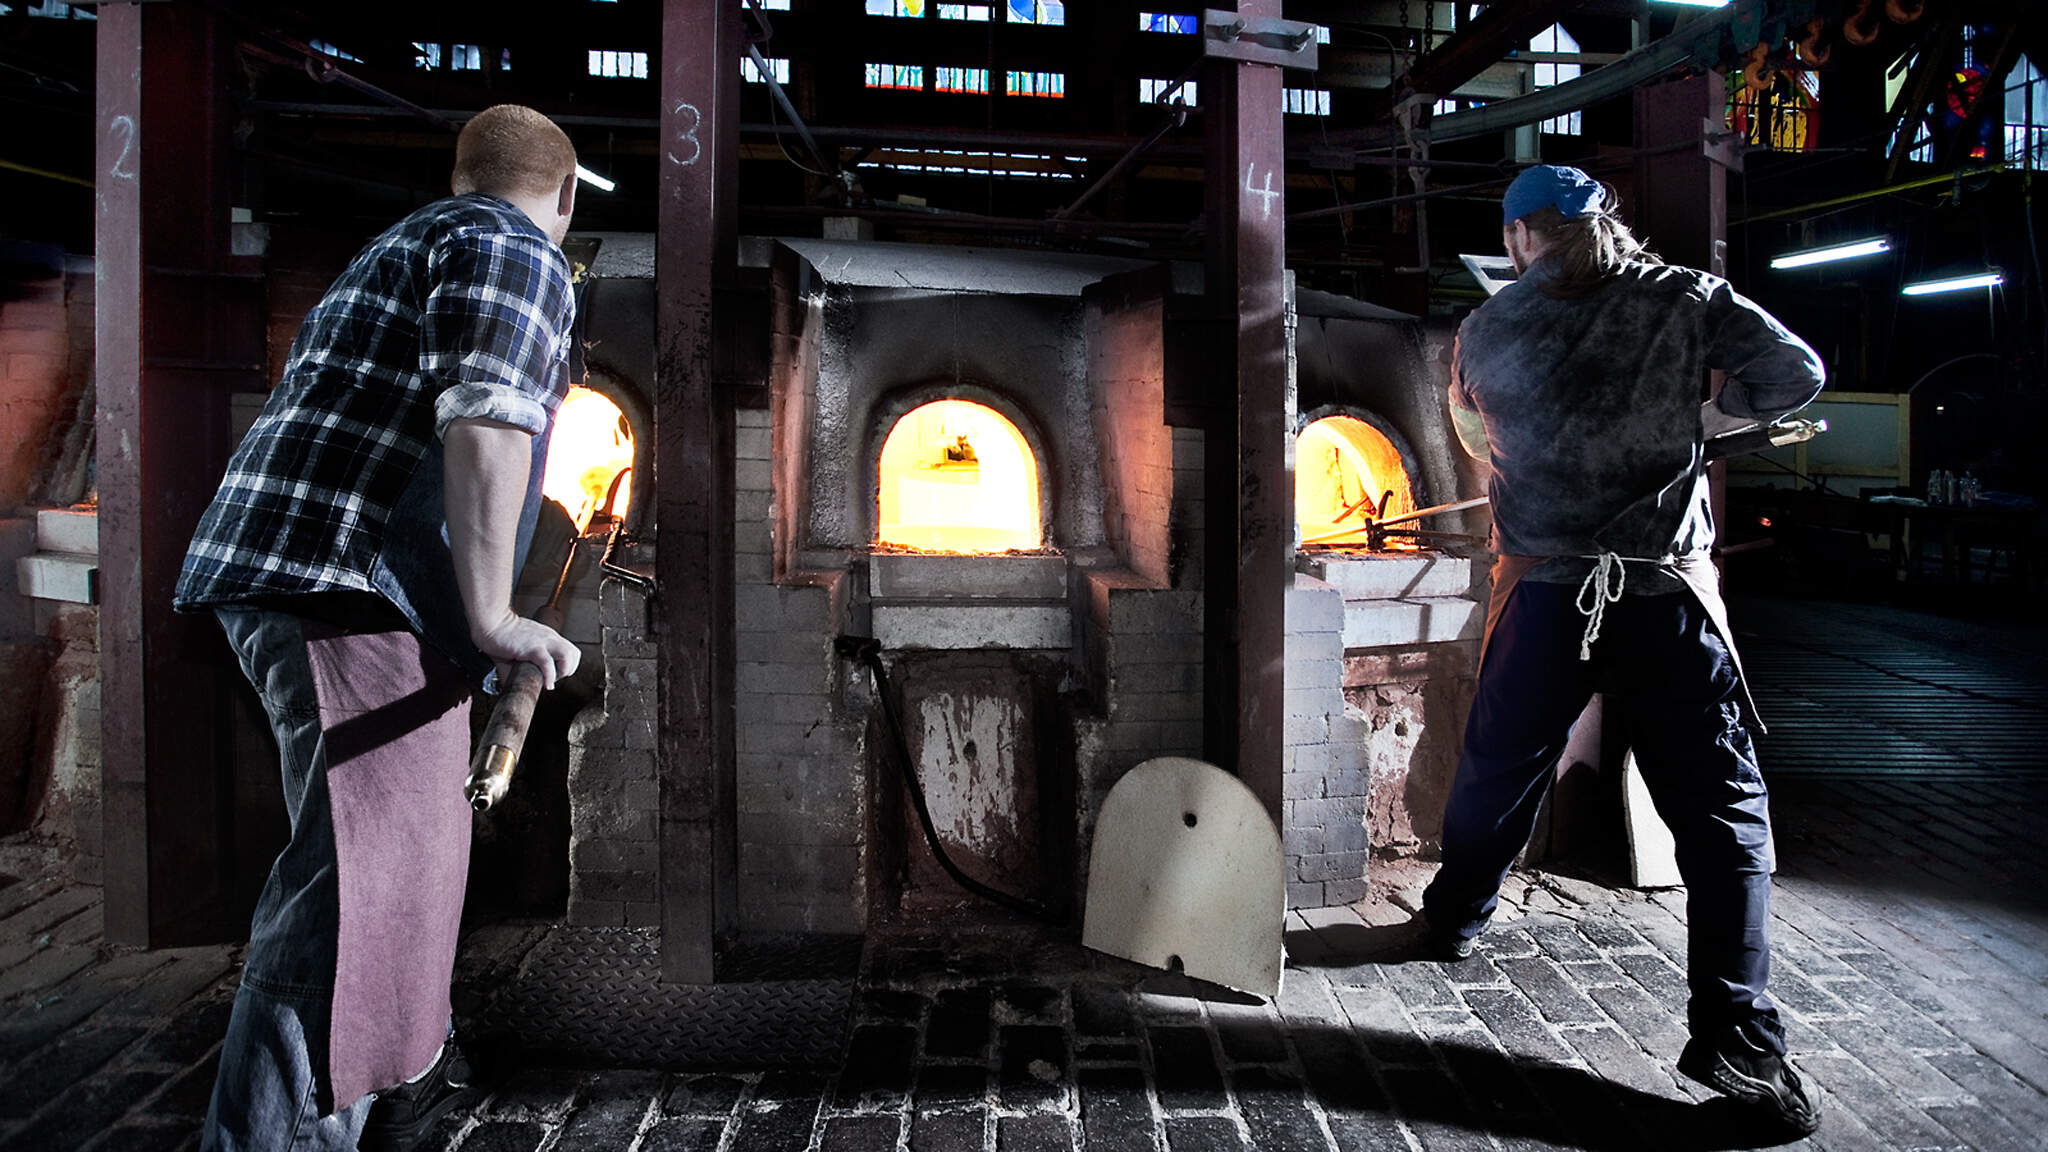 De Lamberts glasfabriek produceerde de glasplaten voor de onlangs gerenoveerde Big Ben.

.